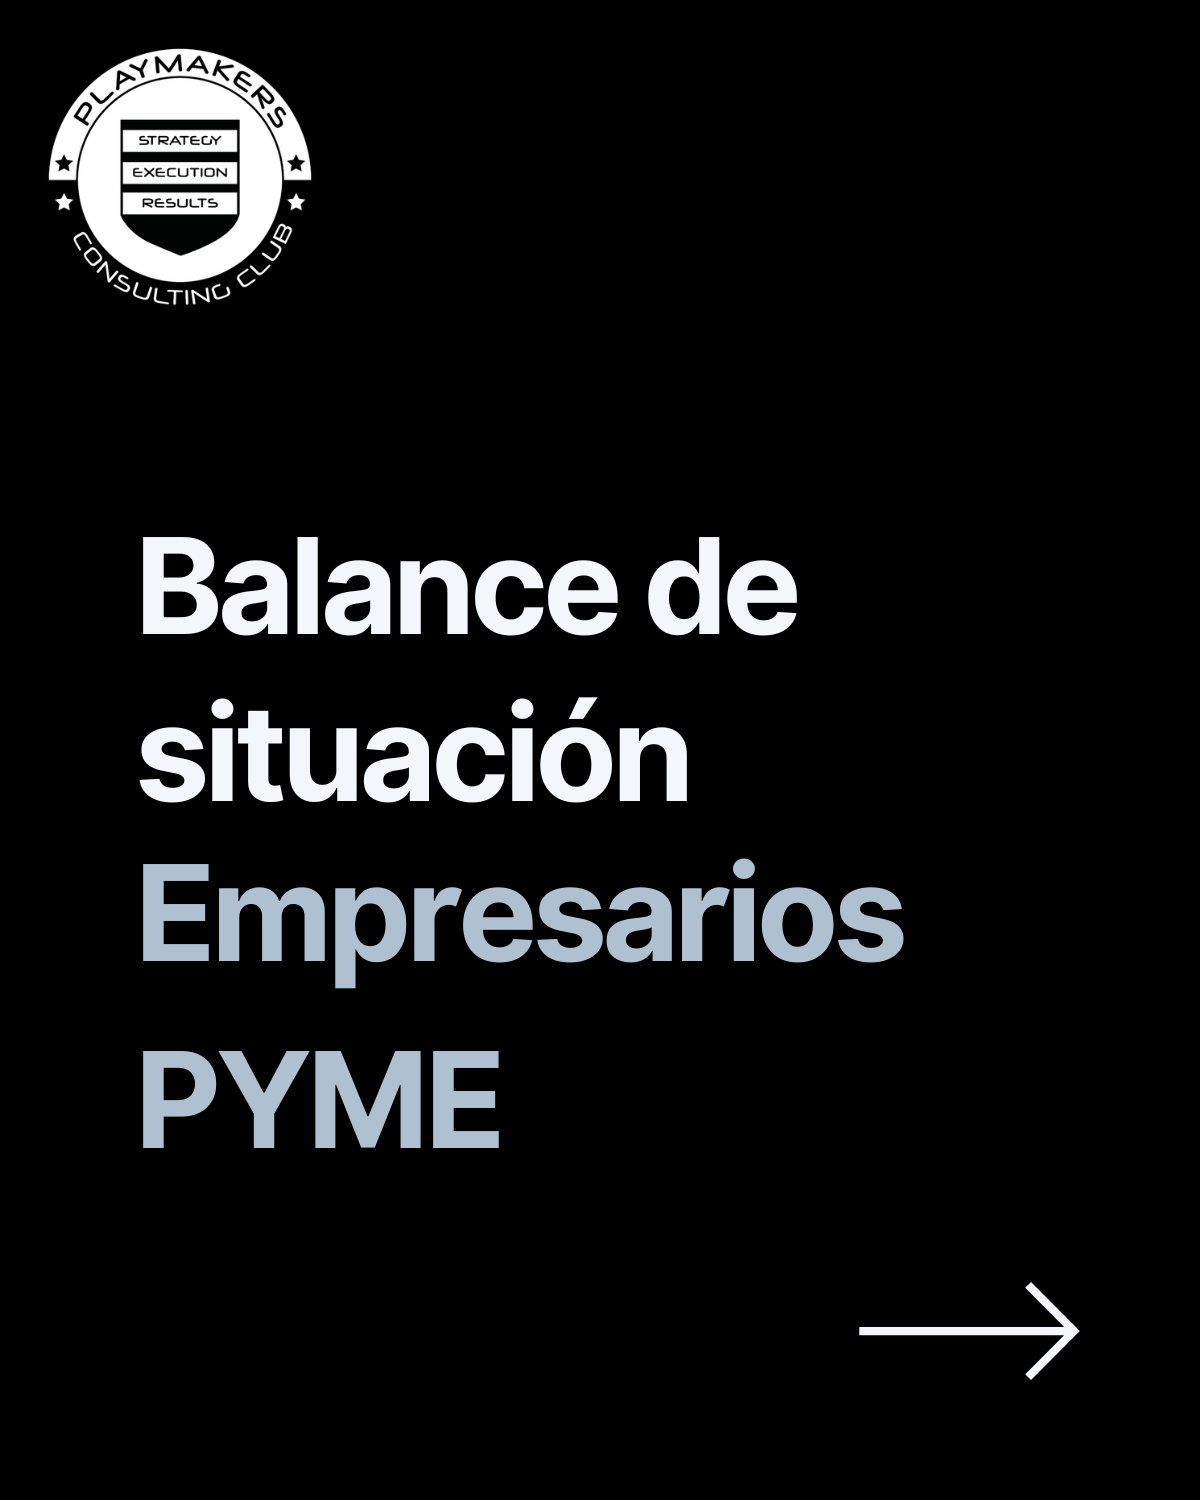 Balance de situación para empresarios pyme en España